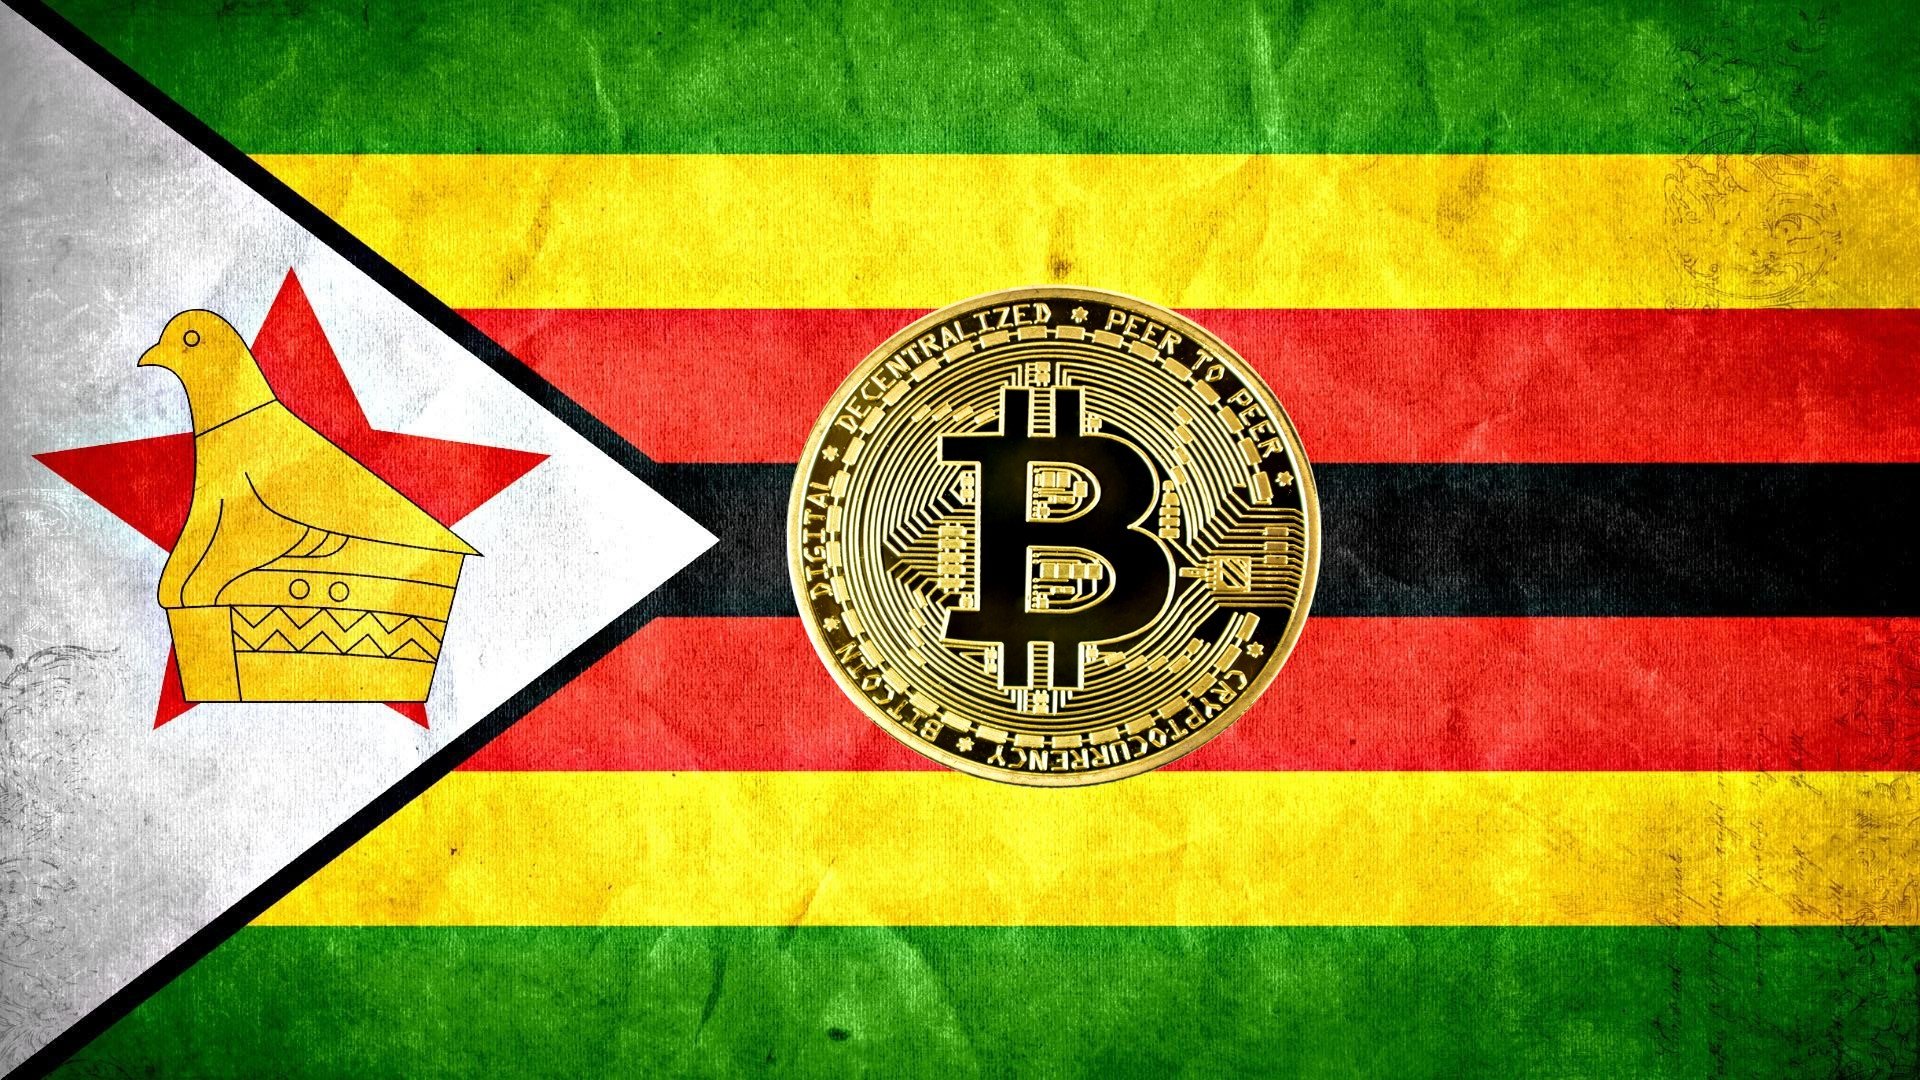 bitcoin zimbabwe